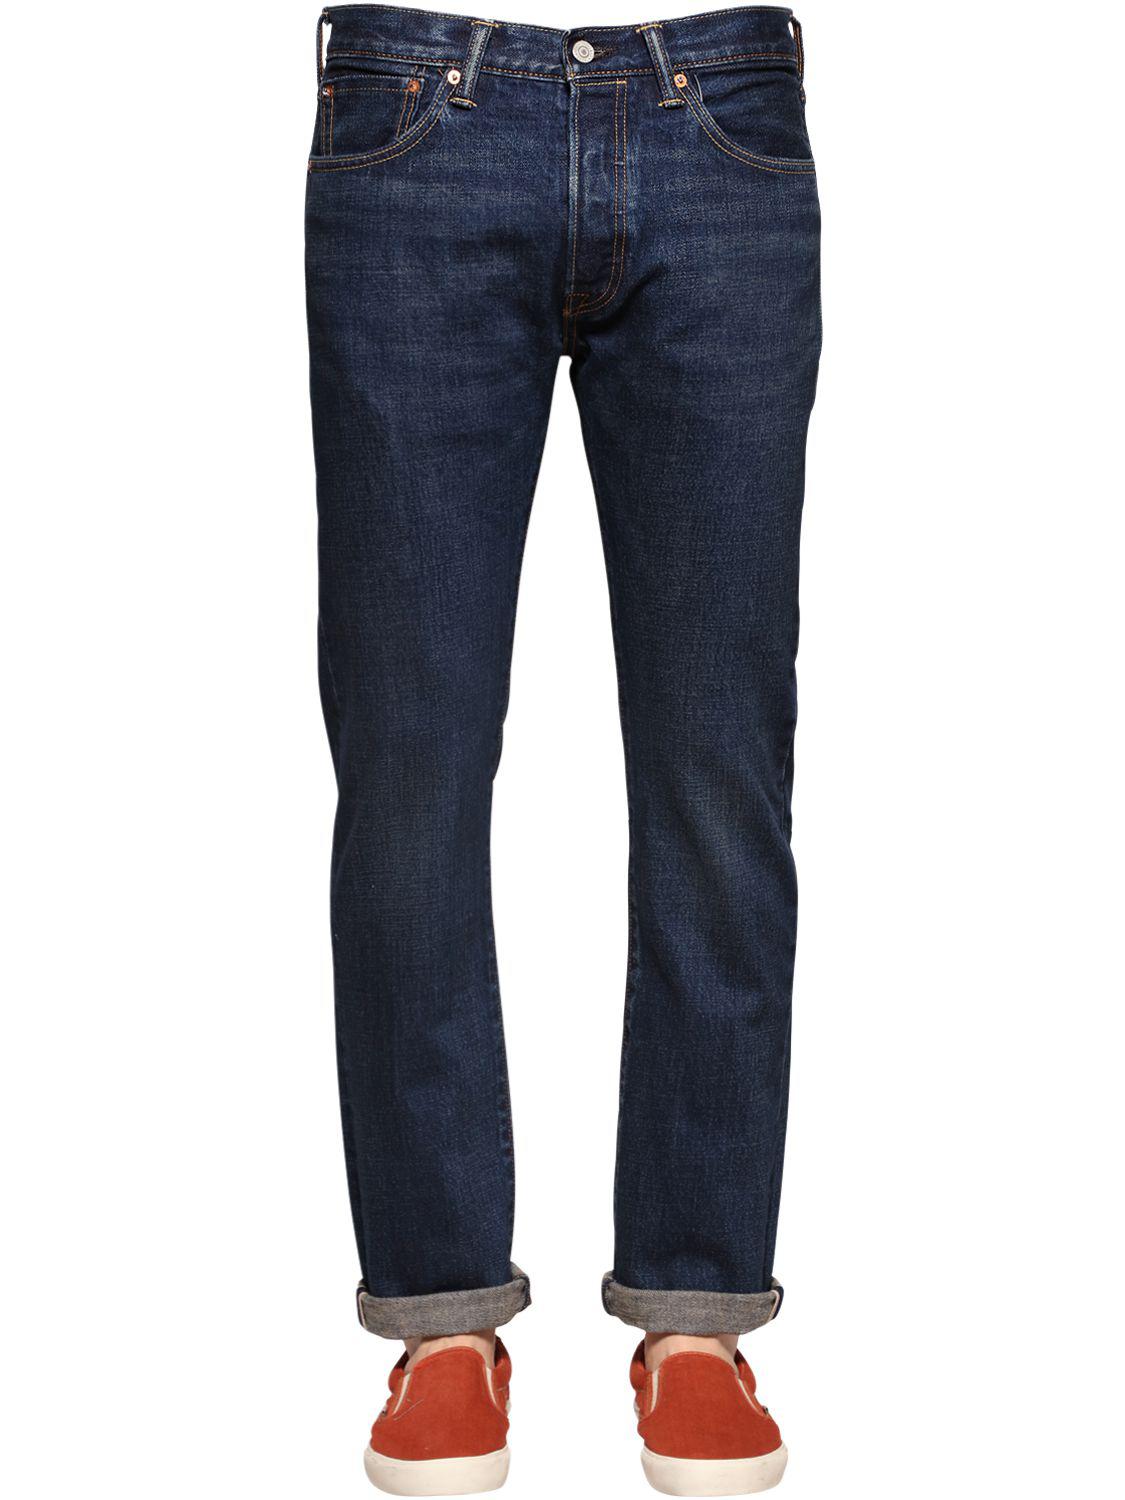 Levi's 501 Original Fit Selvedge Denim Jeans in Indigo (Blue) for Men